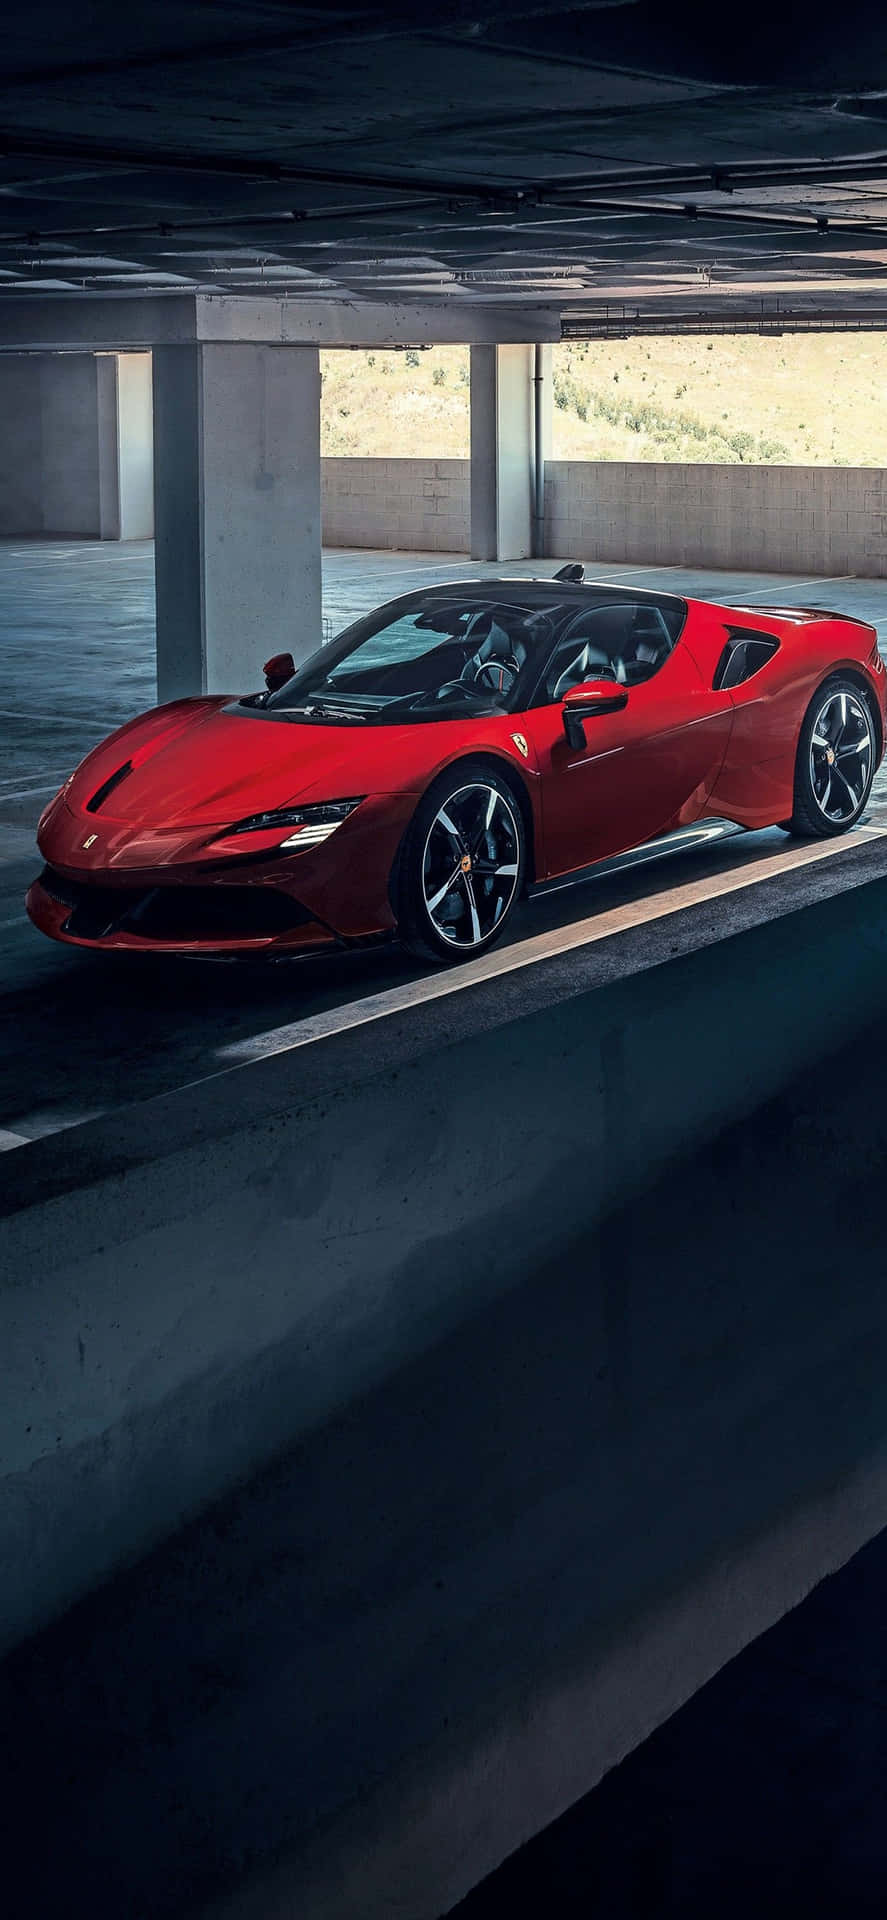 Fondode Pantalla Para Iphone Xs Max Con Ferrari En Color Rojo Sf90 Stradale Estacionado En Un Estacionamiento.